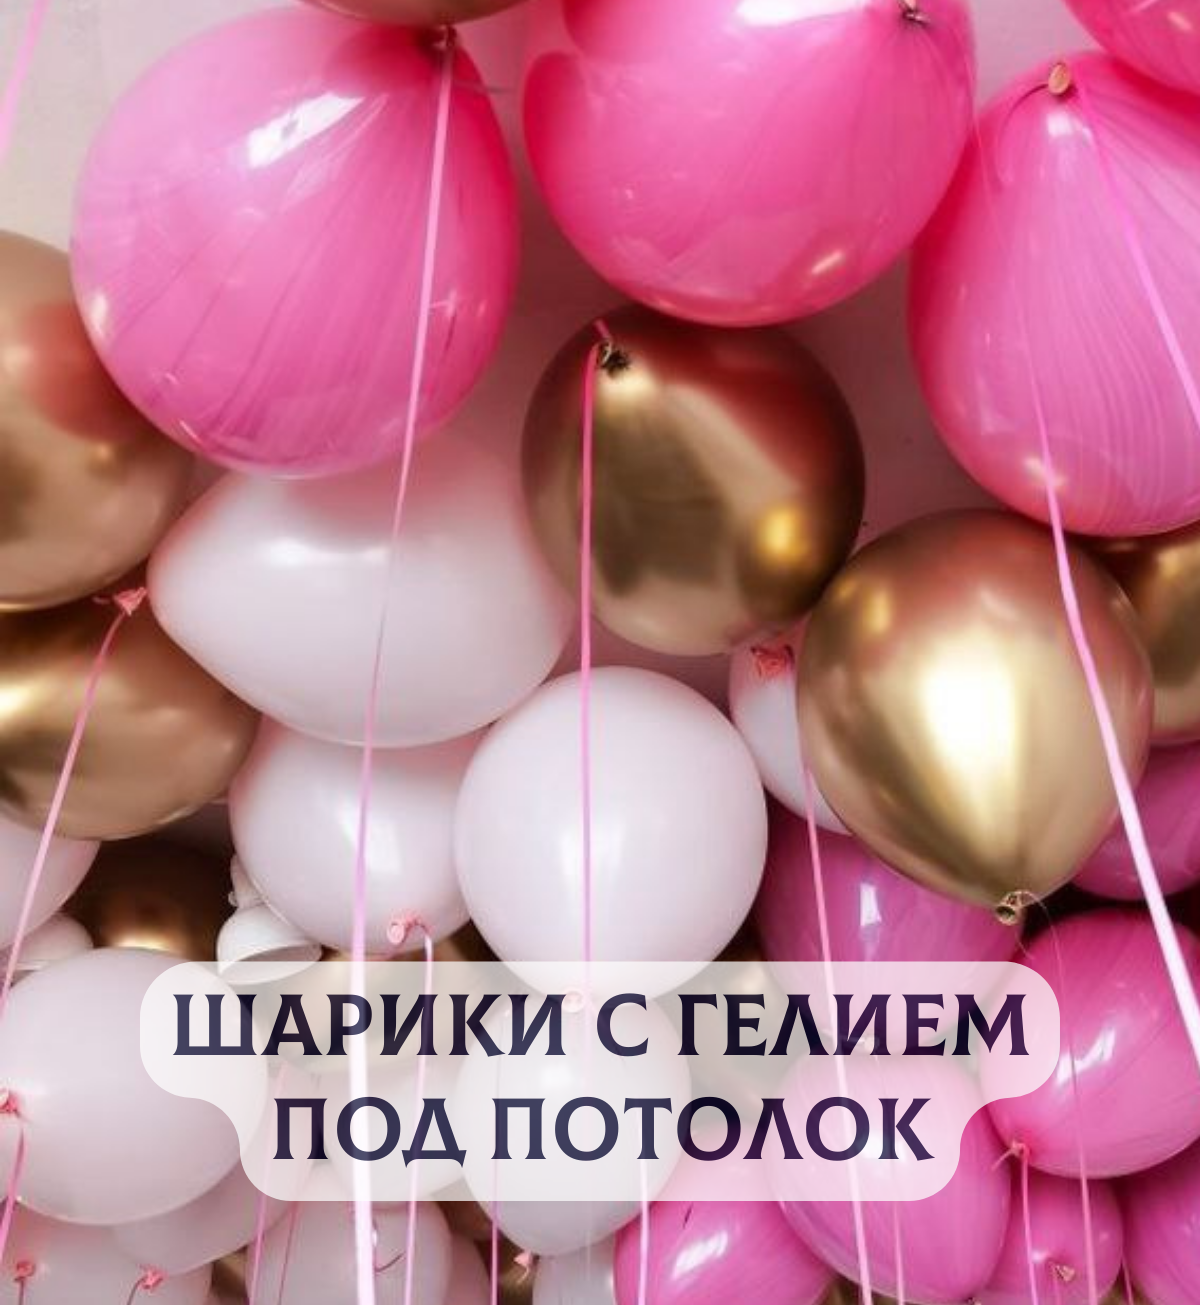 Воздушные шары под потолок "Оттенки розового с золотом" 10 шт.